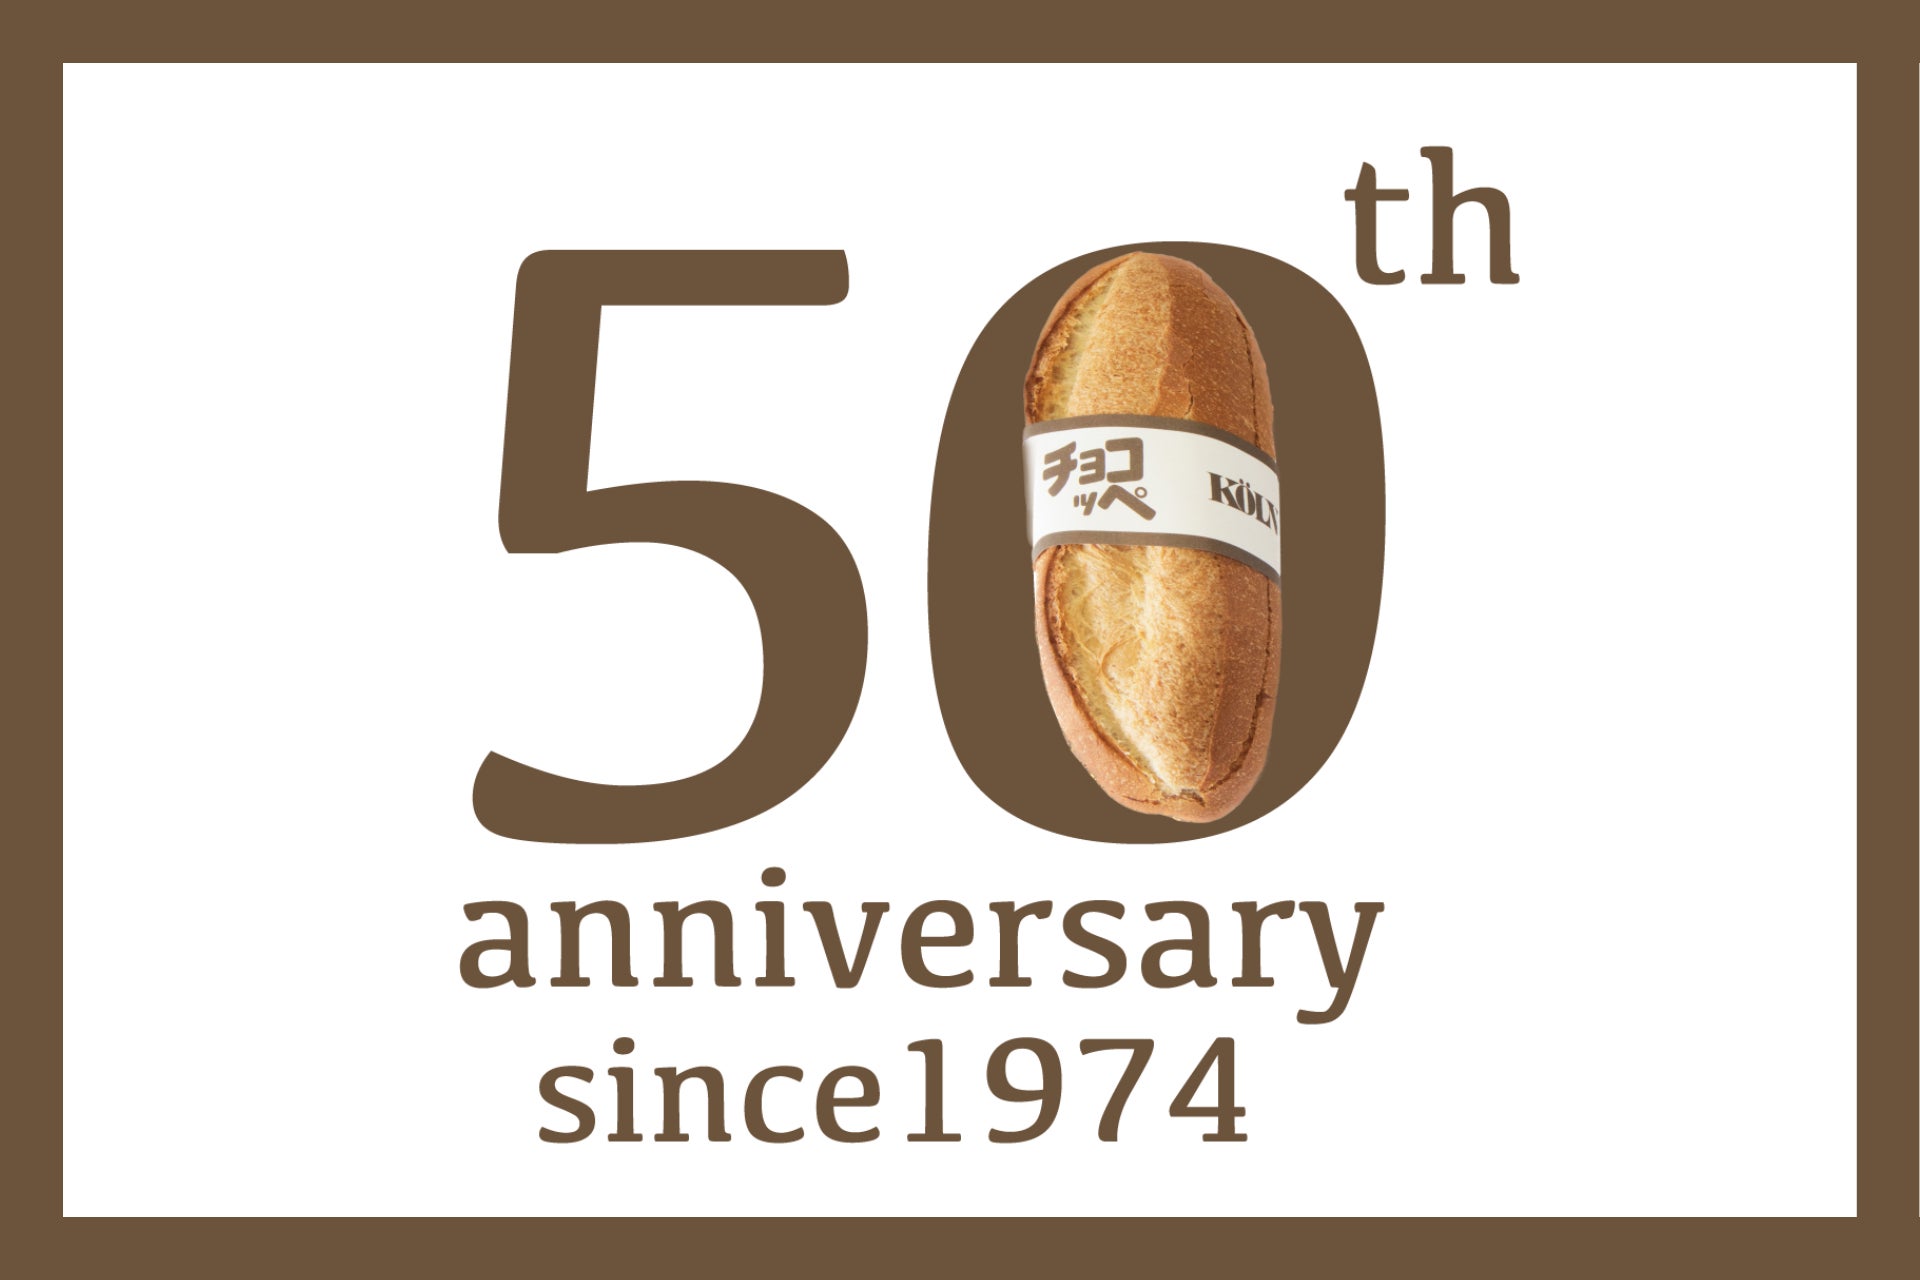 神戸のソウルフードとして愛されるケルンの「チョコッペ」発売から50年を目前に「チョコッペとの思い出」を募集するキャンペーンを実施します！